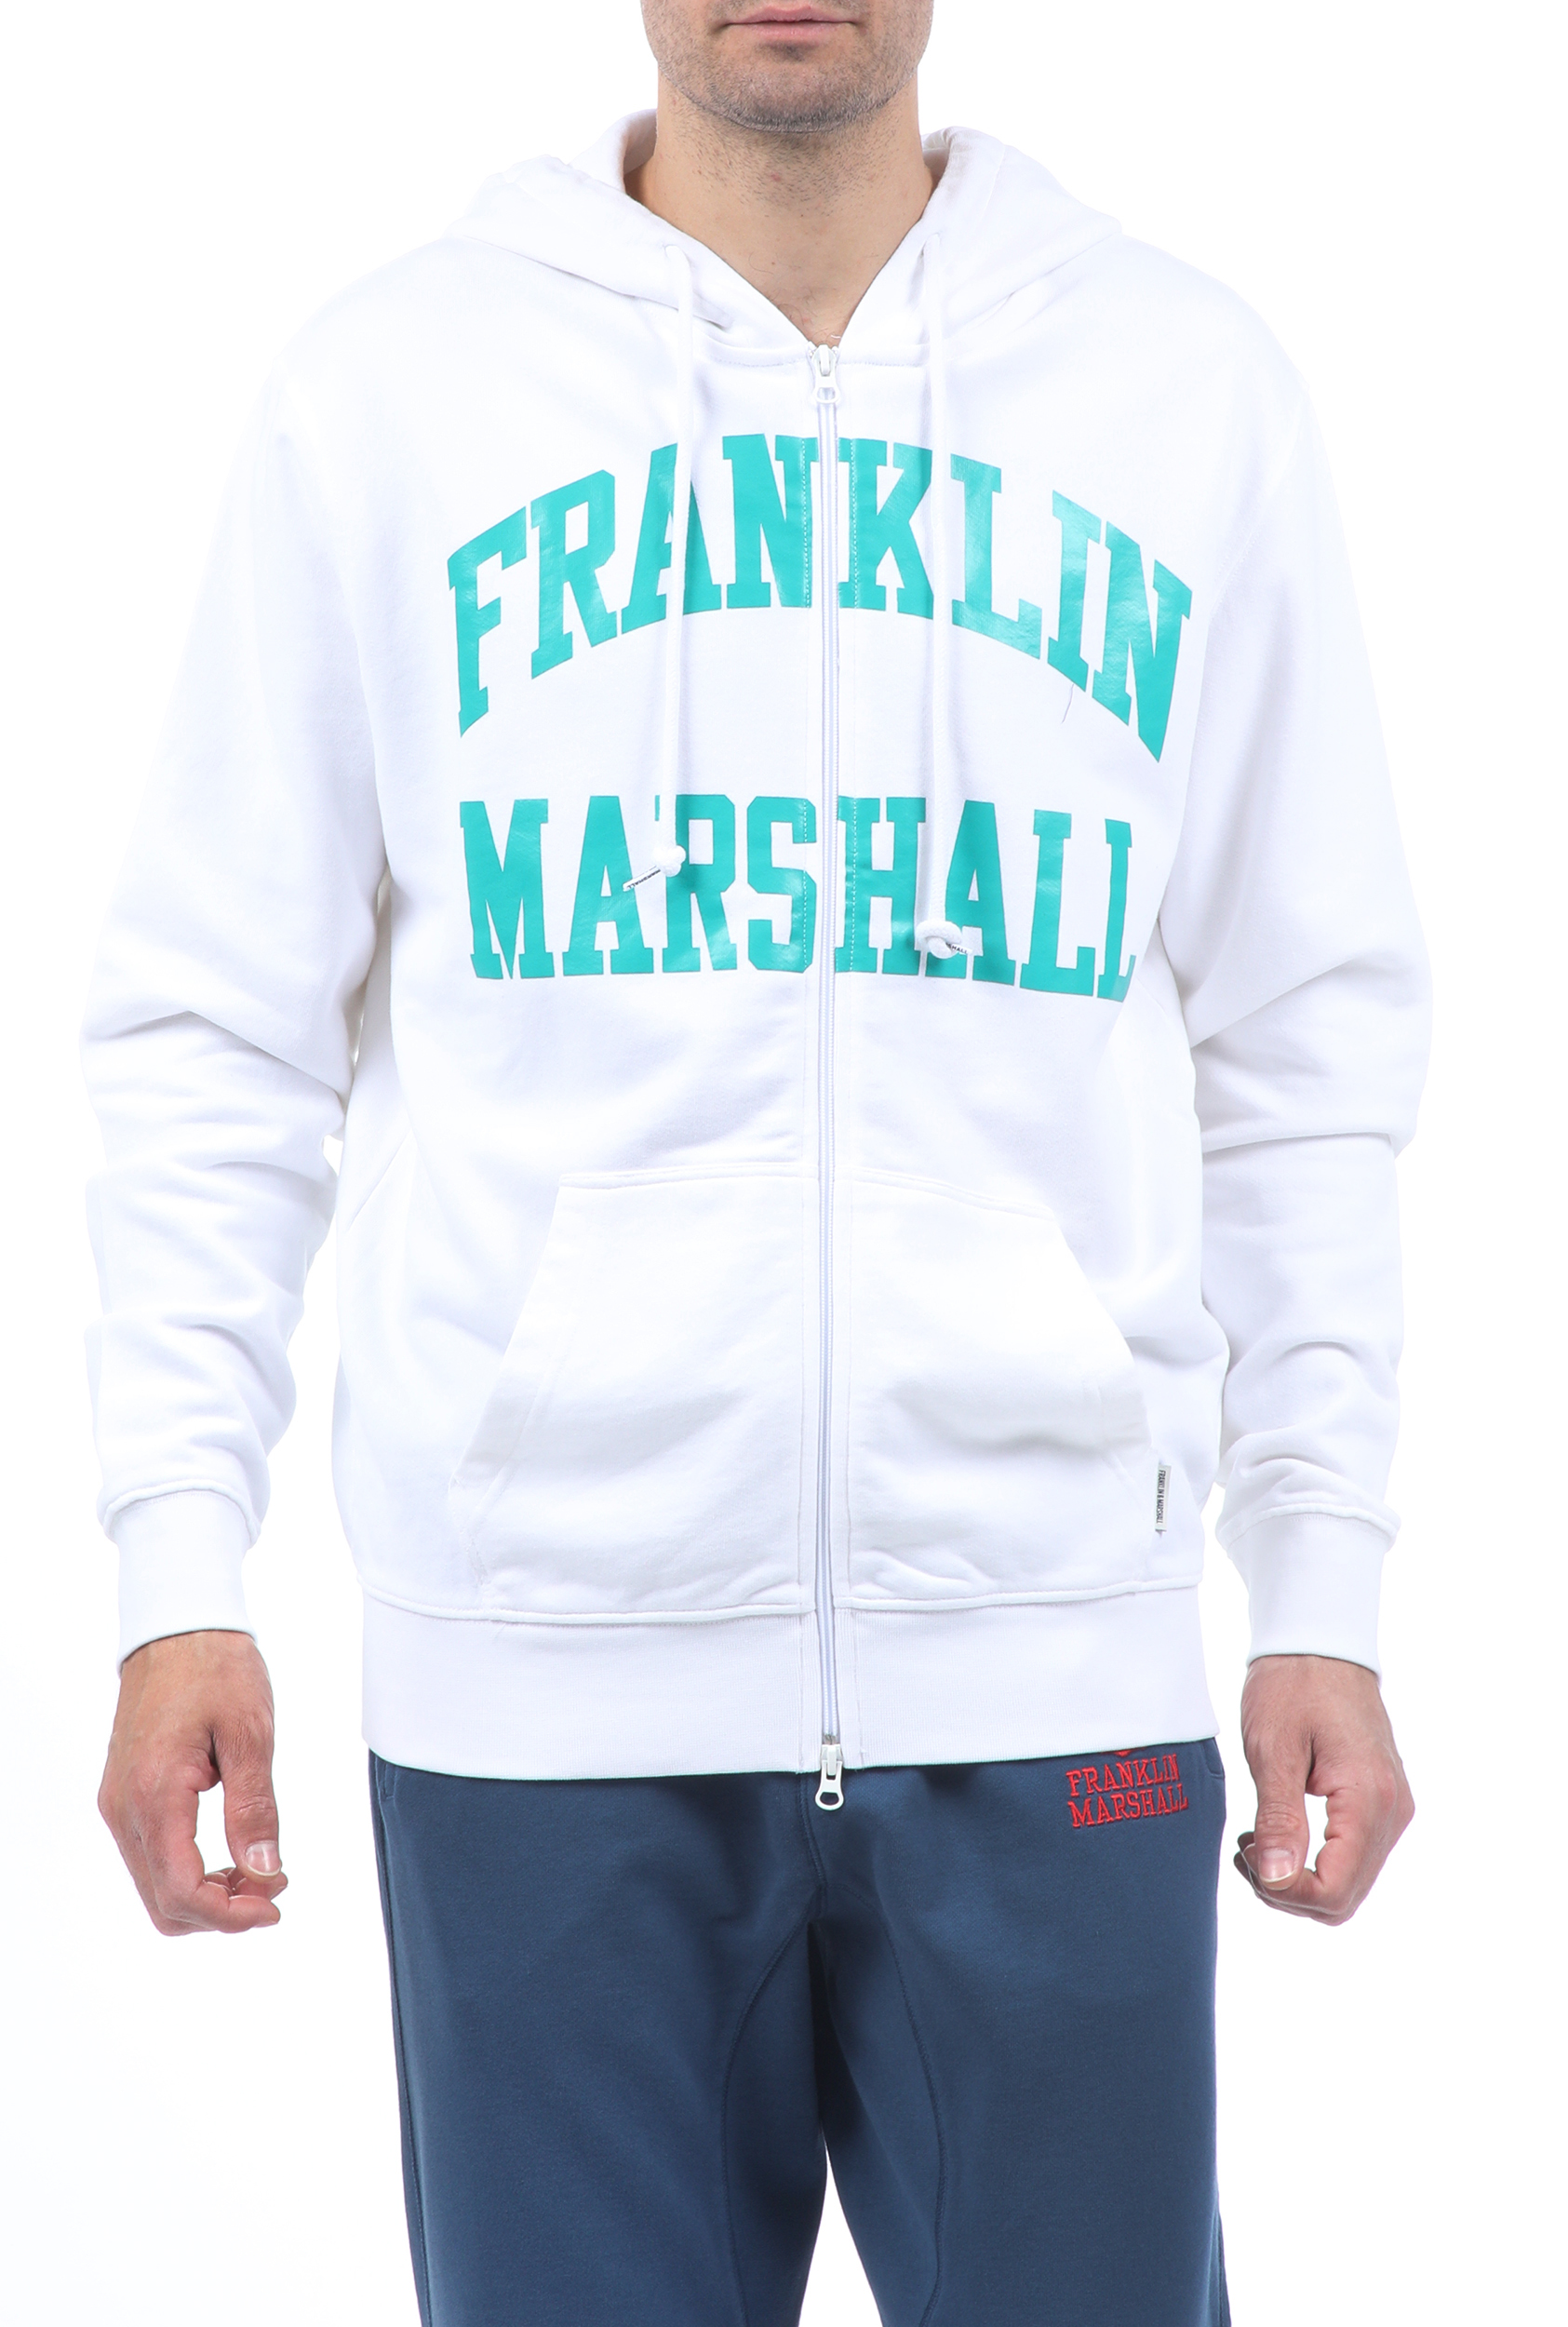 Ανδρικά/Ρούχα/Φούτερ/Ζακέτες FRANKLIN & MARSHALL - Ανδρική φούτερ ζακέτα FRANKLIN & MARSHALL λευκή